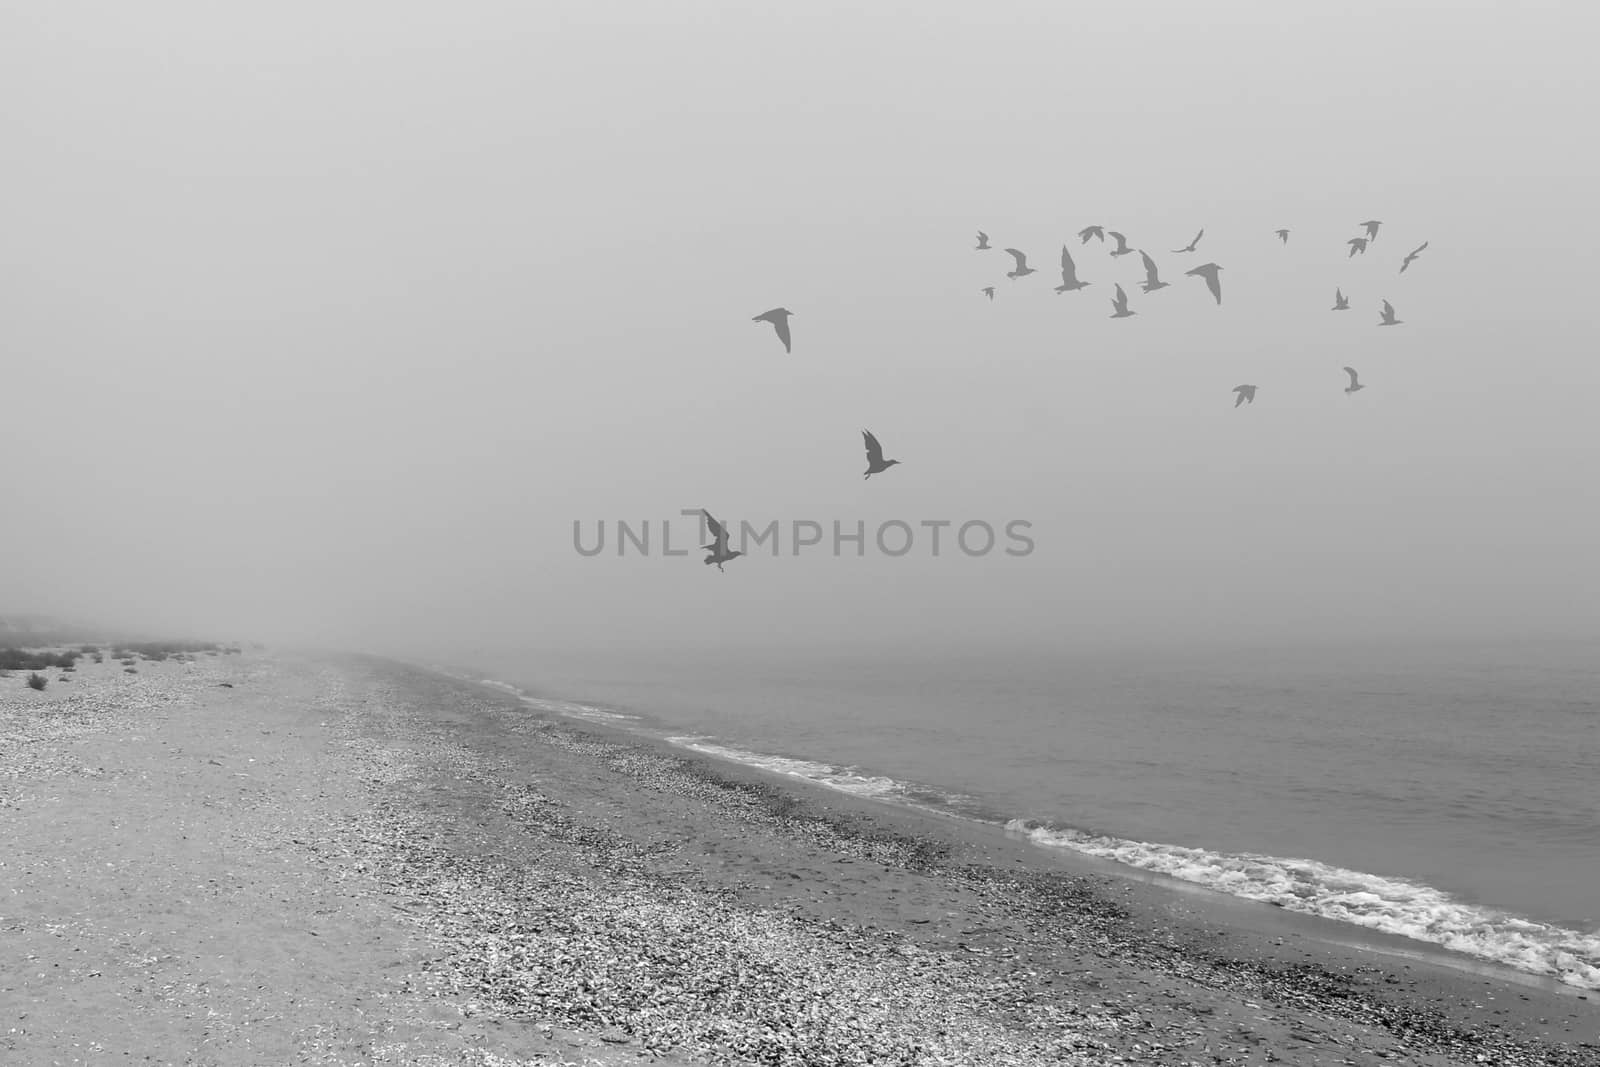 Seagulls in a fog by hibrida13